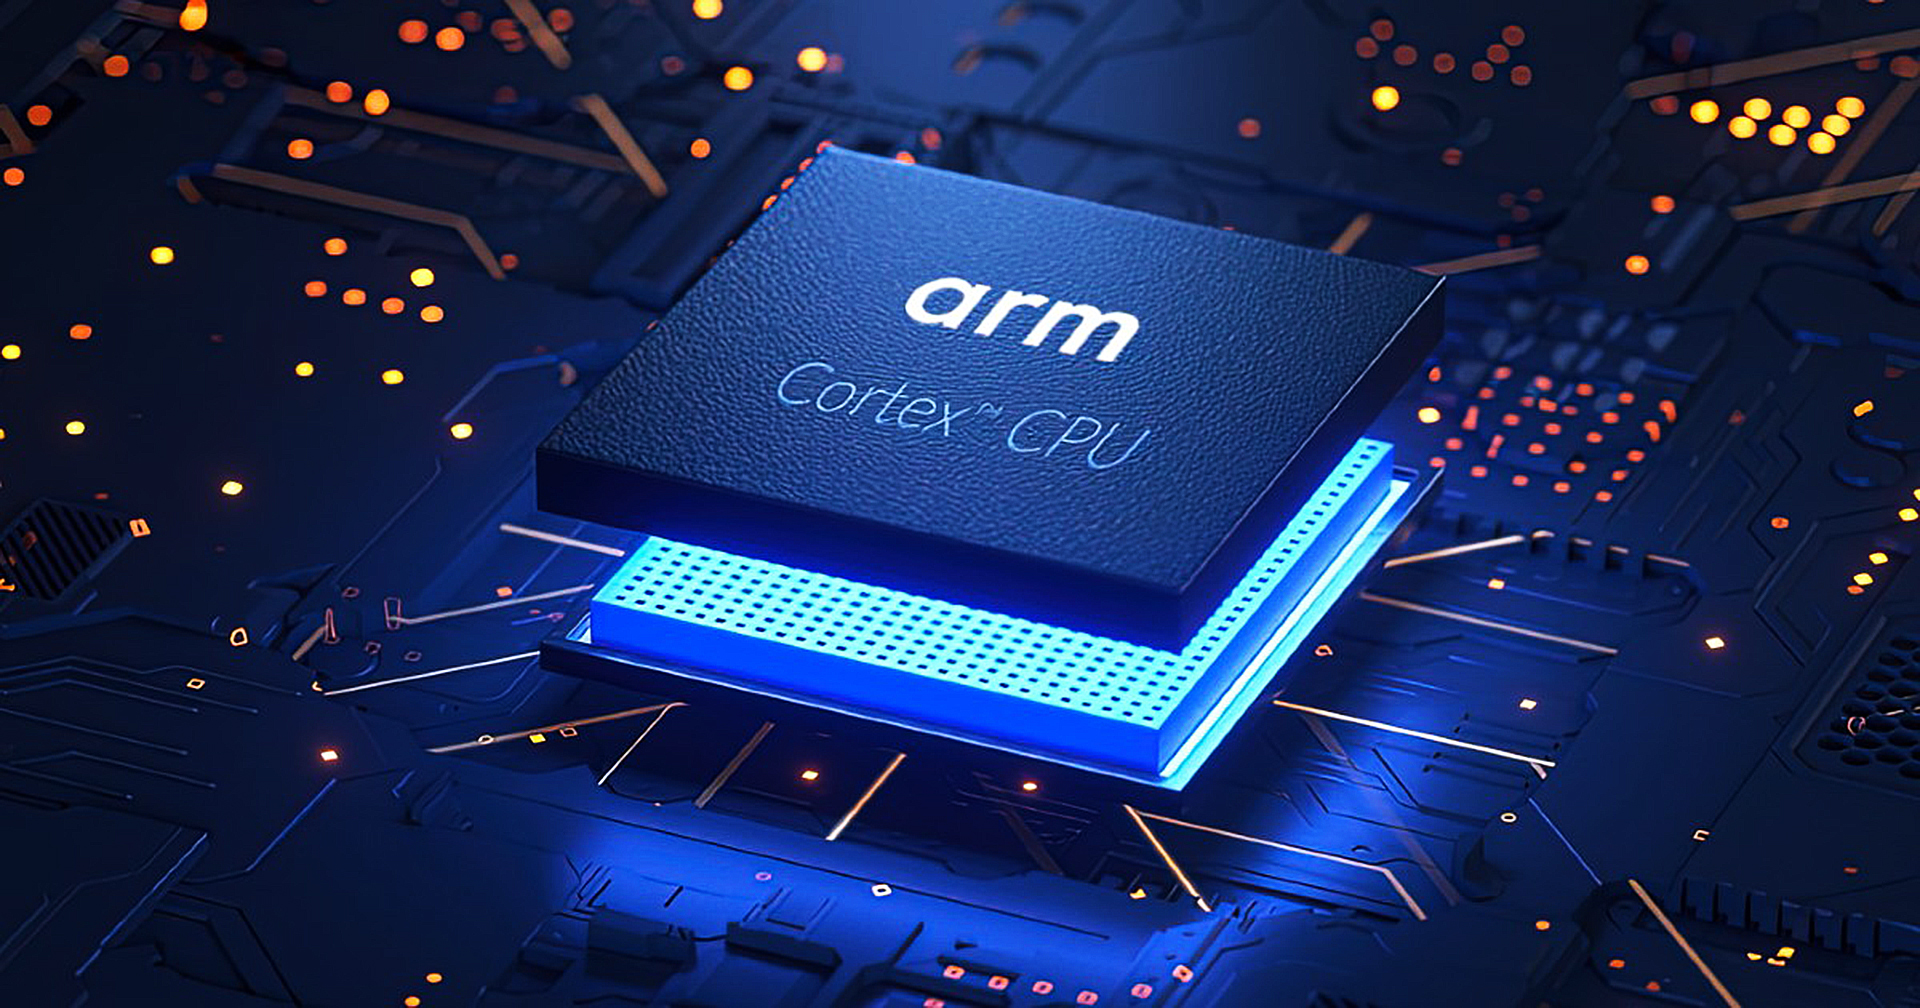 ARM อาจปรับลดพนักงานลง 15% หลังการเข้าซื้อกิจการโดย Nvidia ล้มเหลว